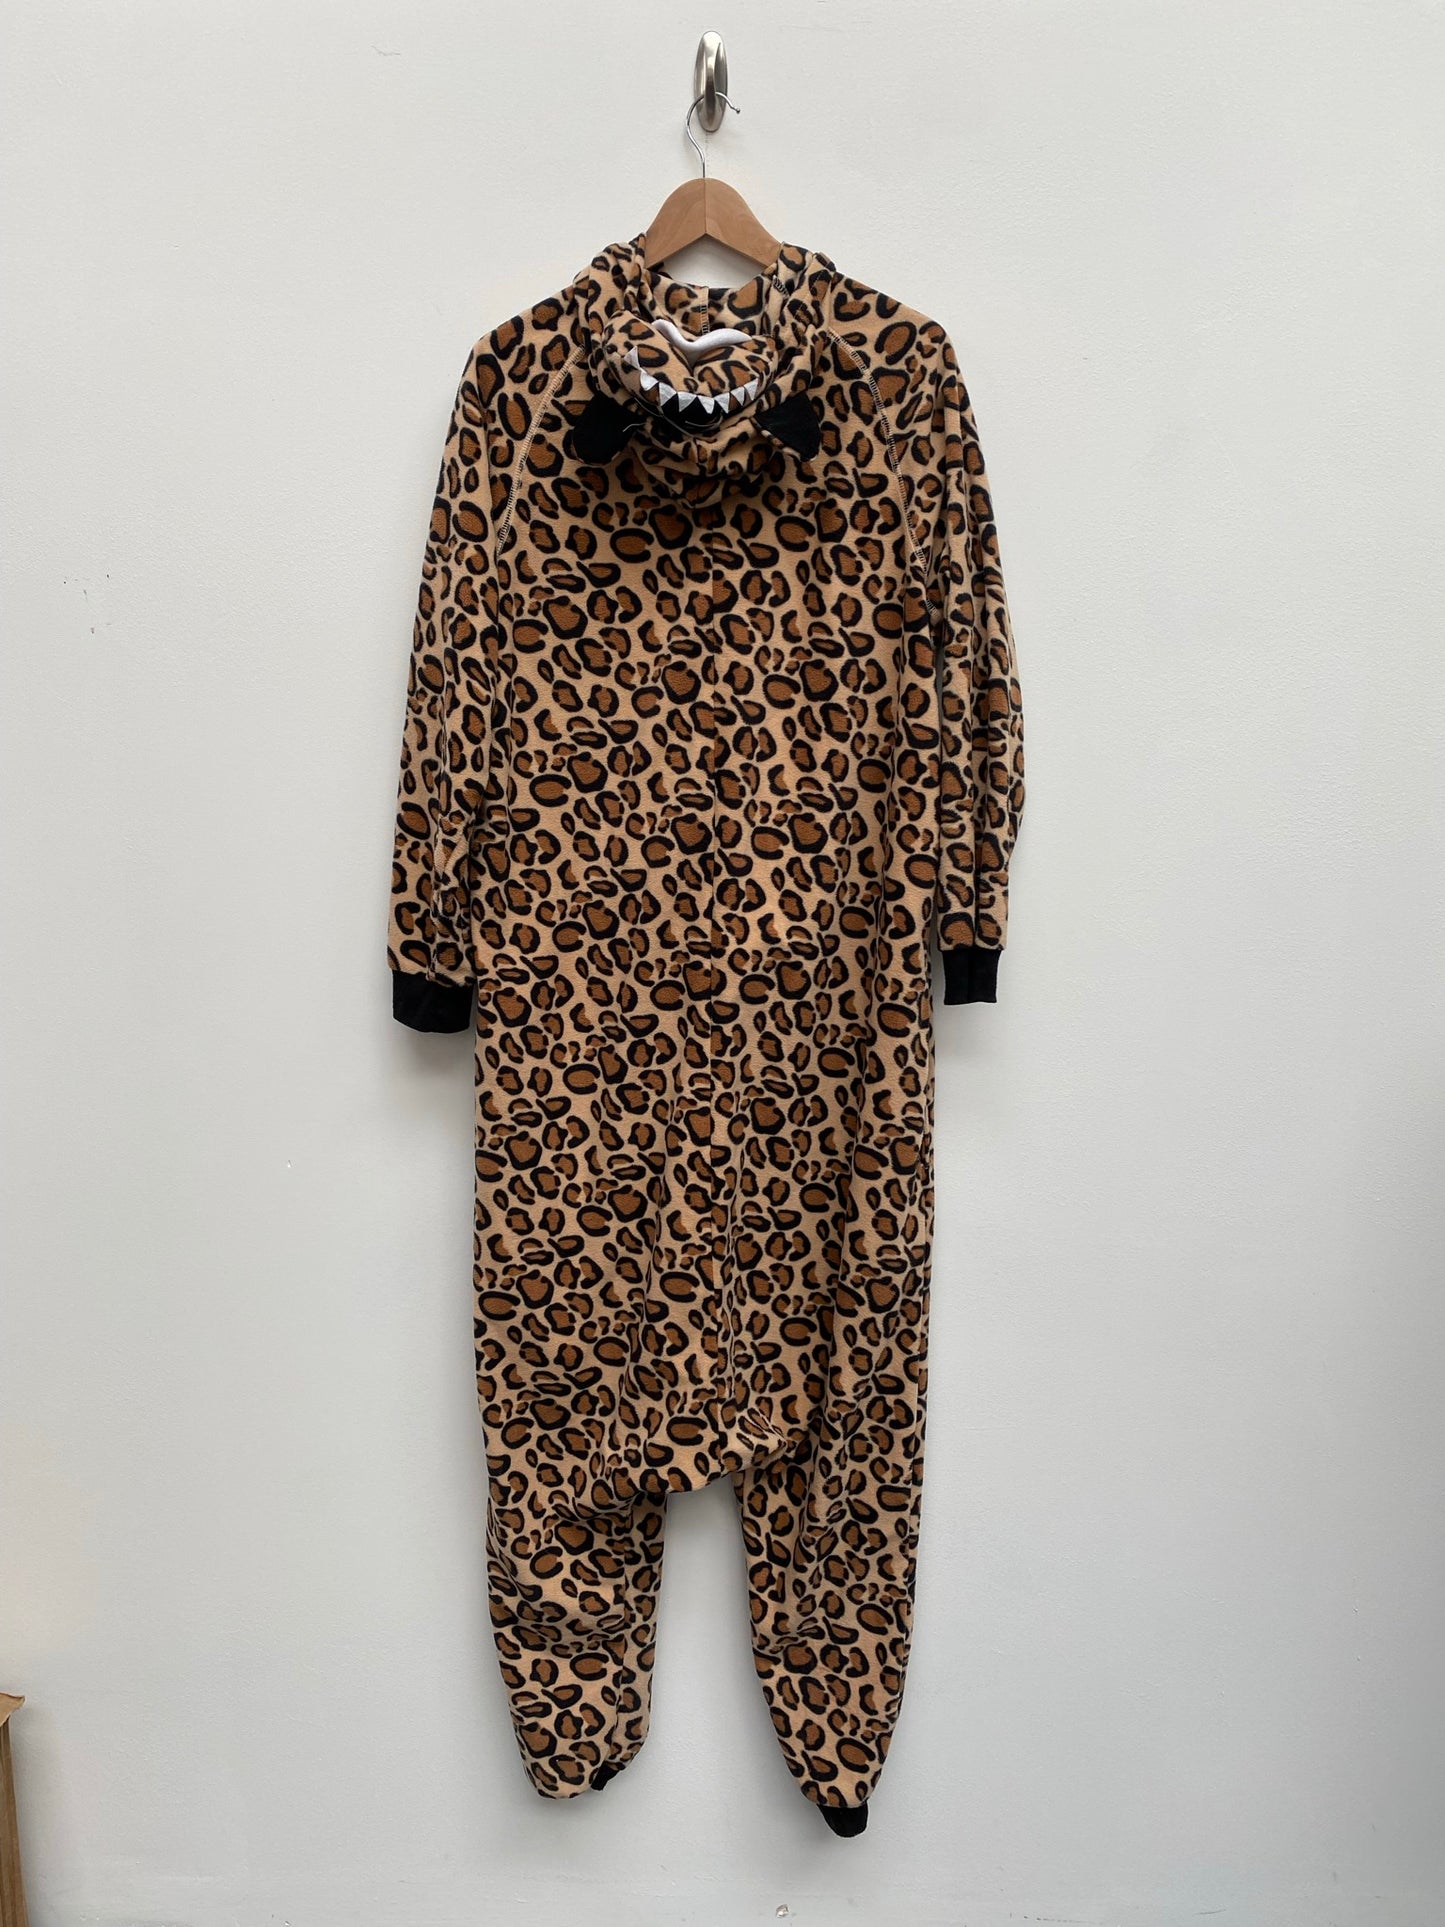 Fleece Leopard One Piece Bodysuit with Head on Hood M/L - Ex Hire Fancy Dress Costume